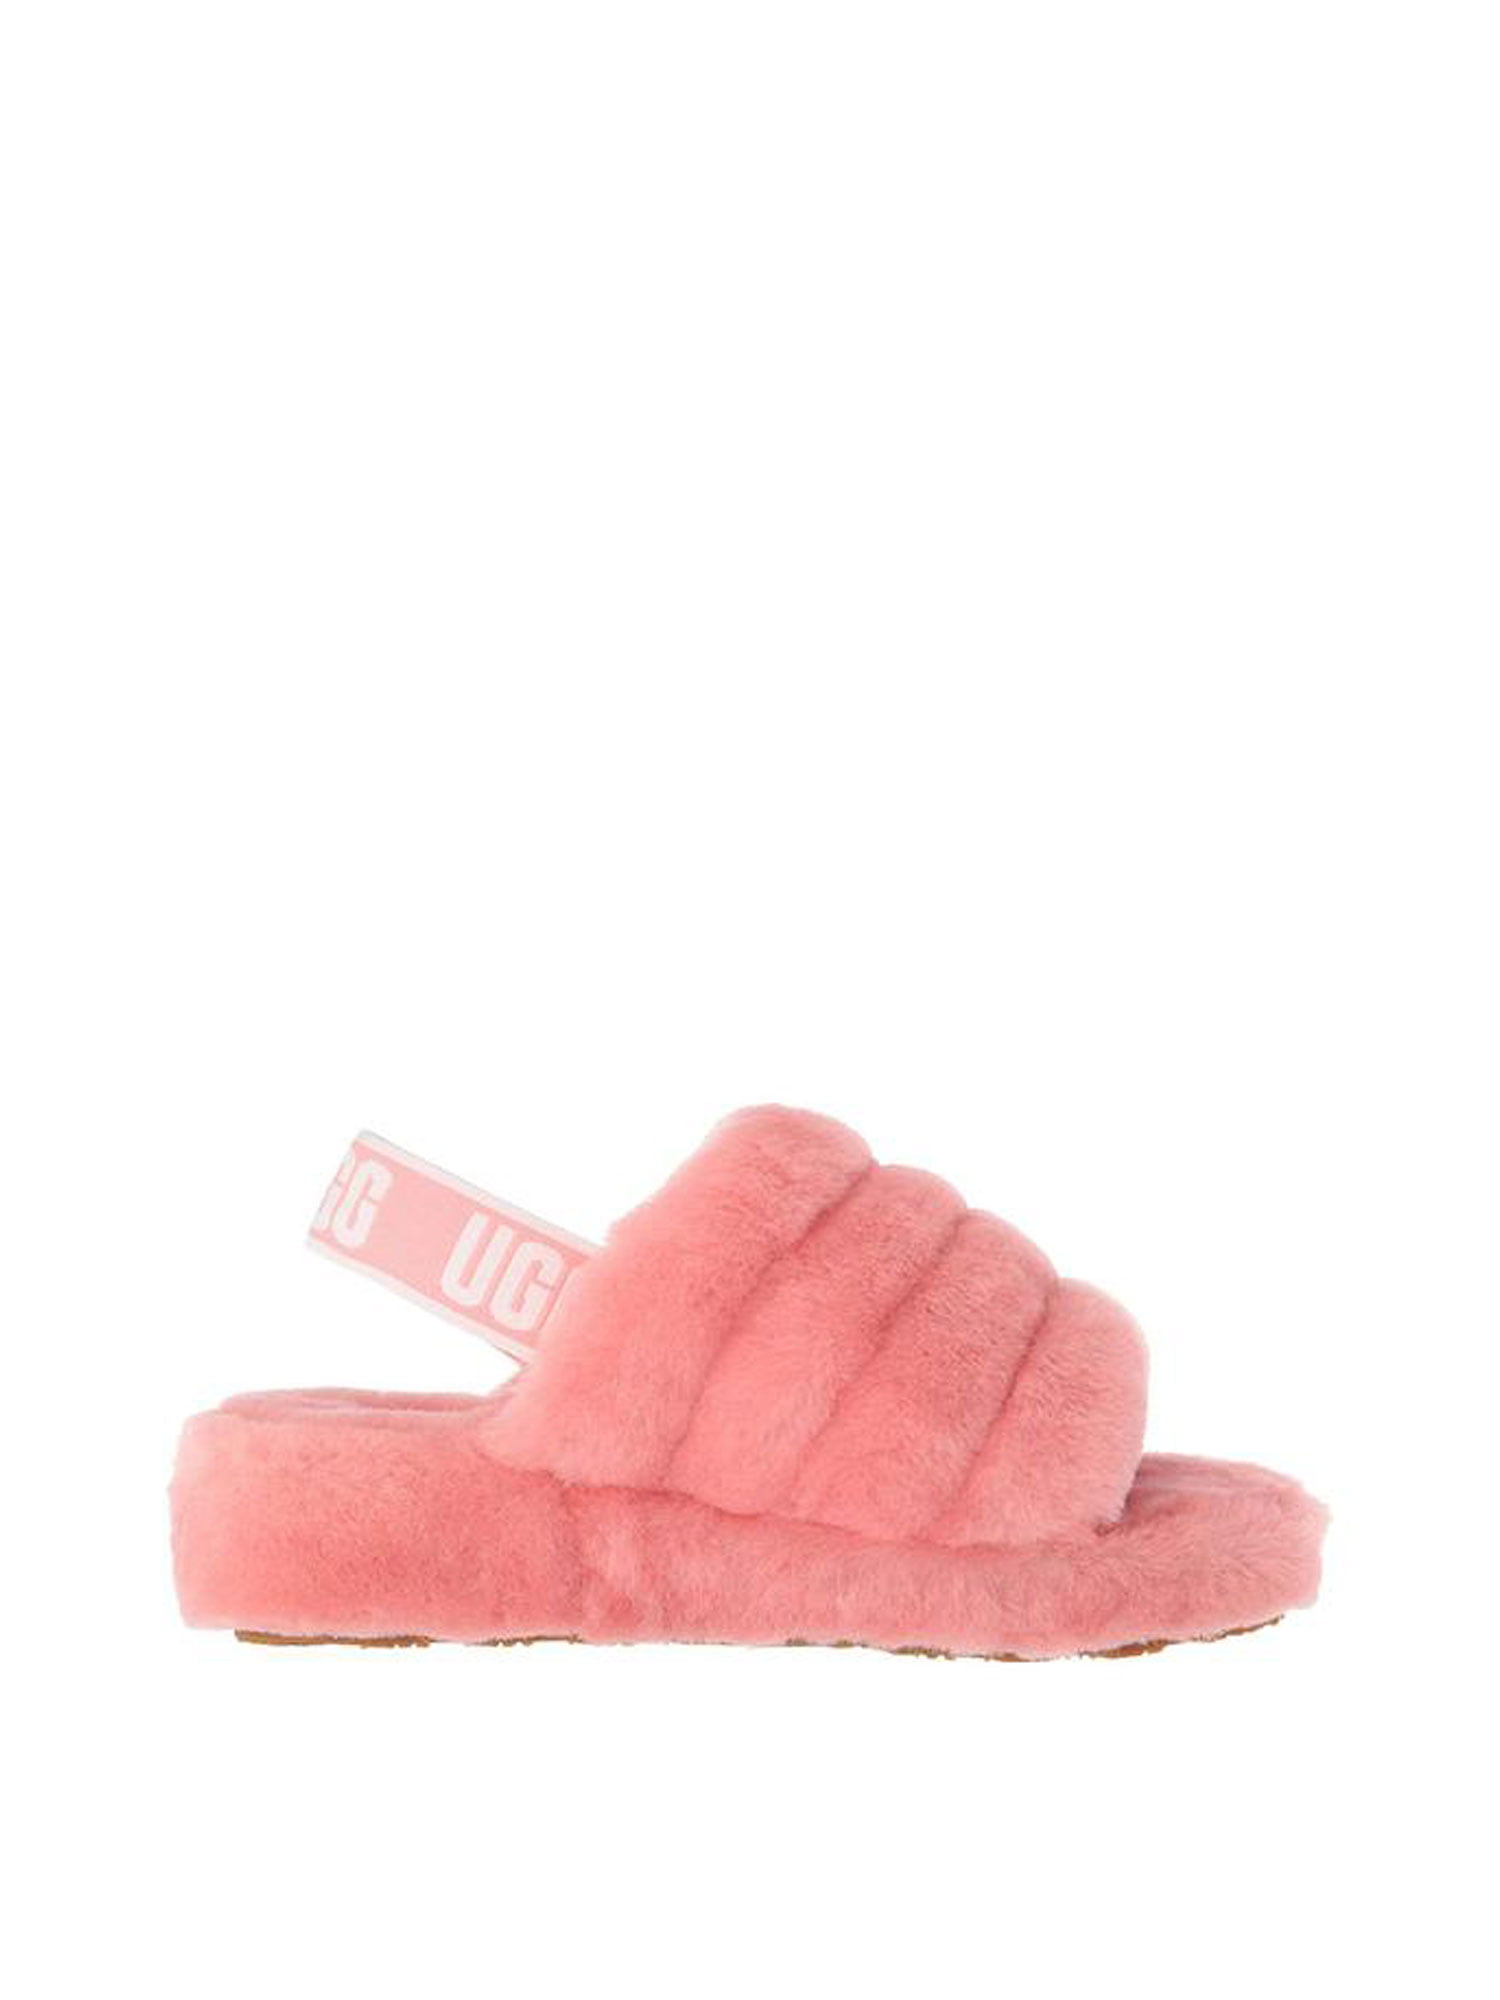 custom ugg slippers